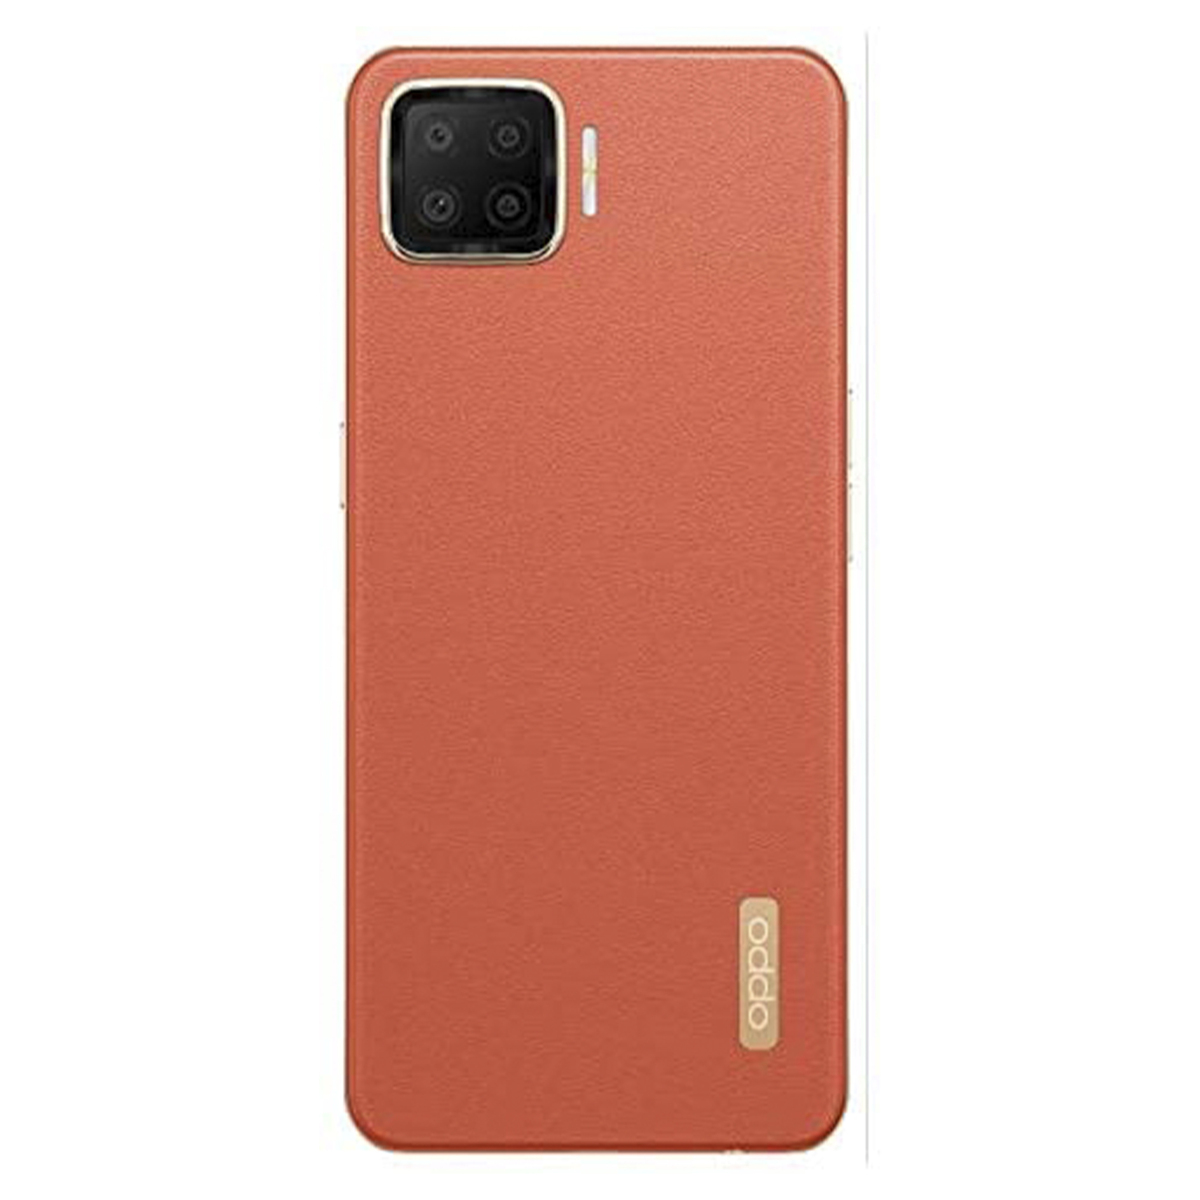 Oppo A73 128GB Dynamic Orange | Smart Phones | Lulu KSA